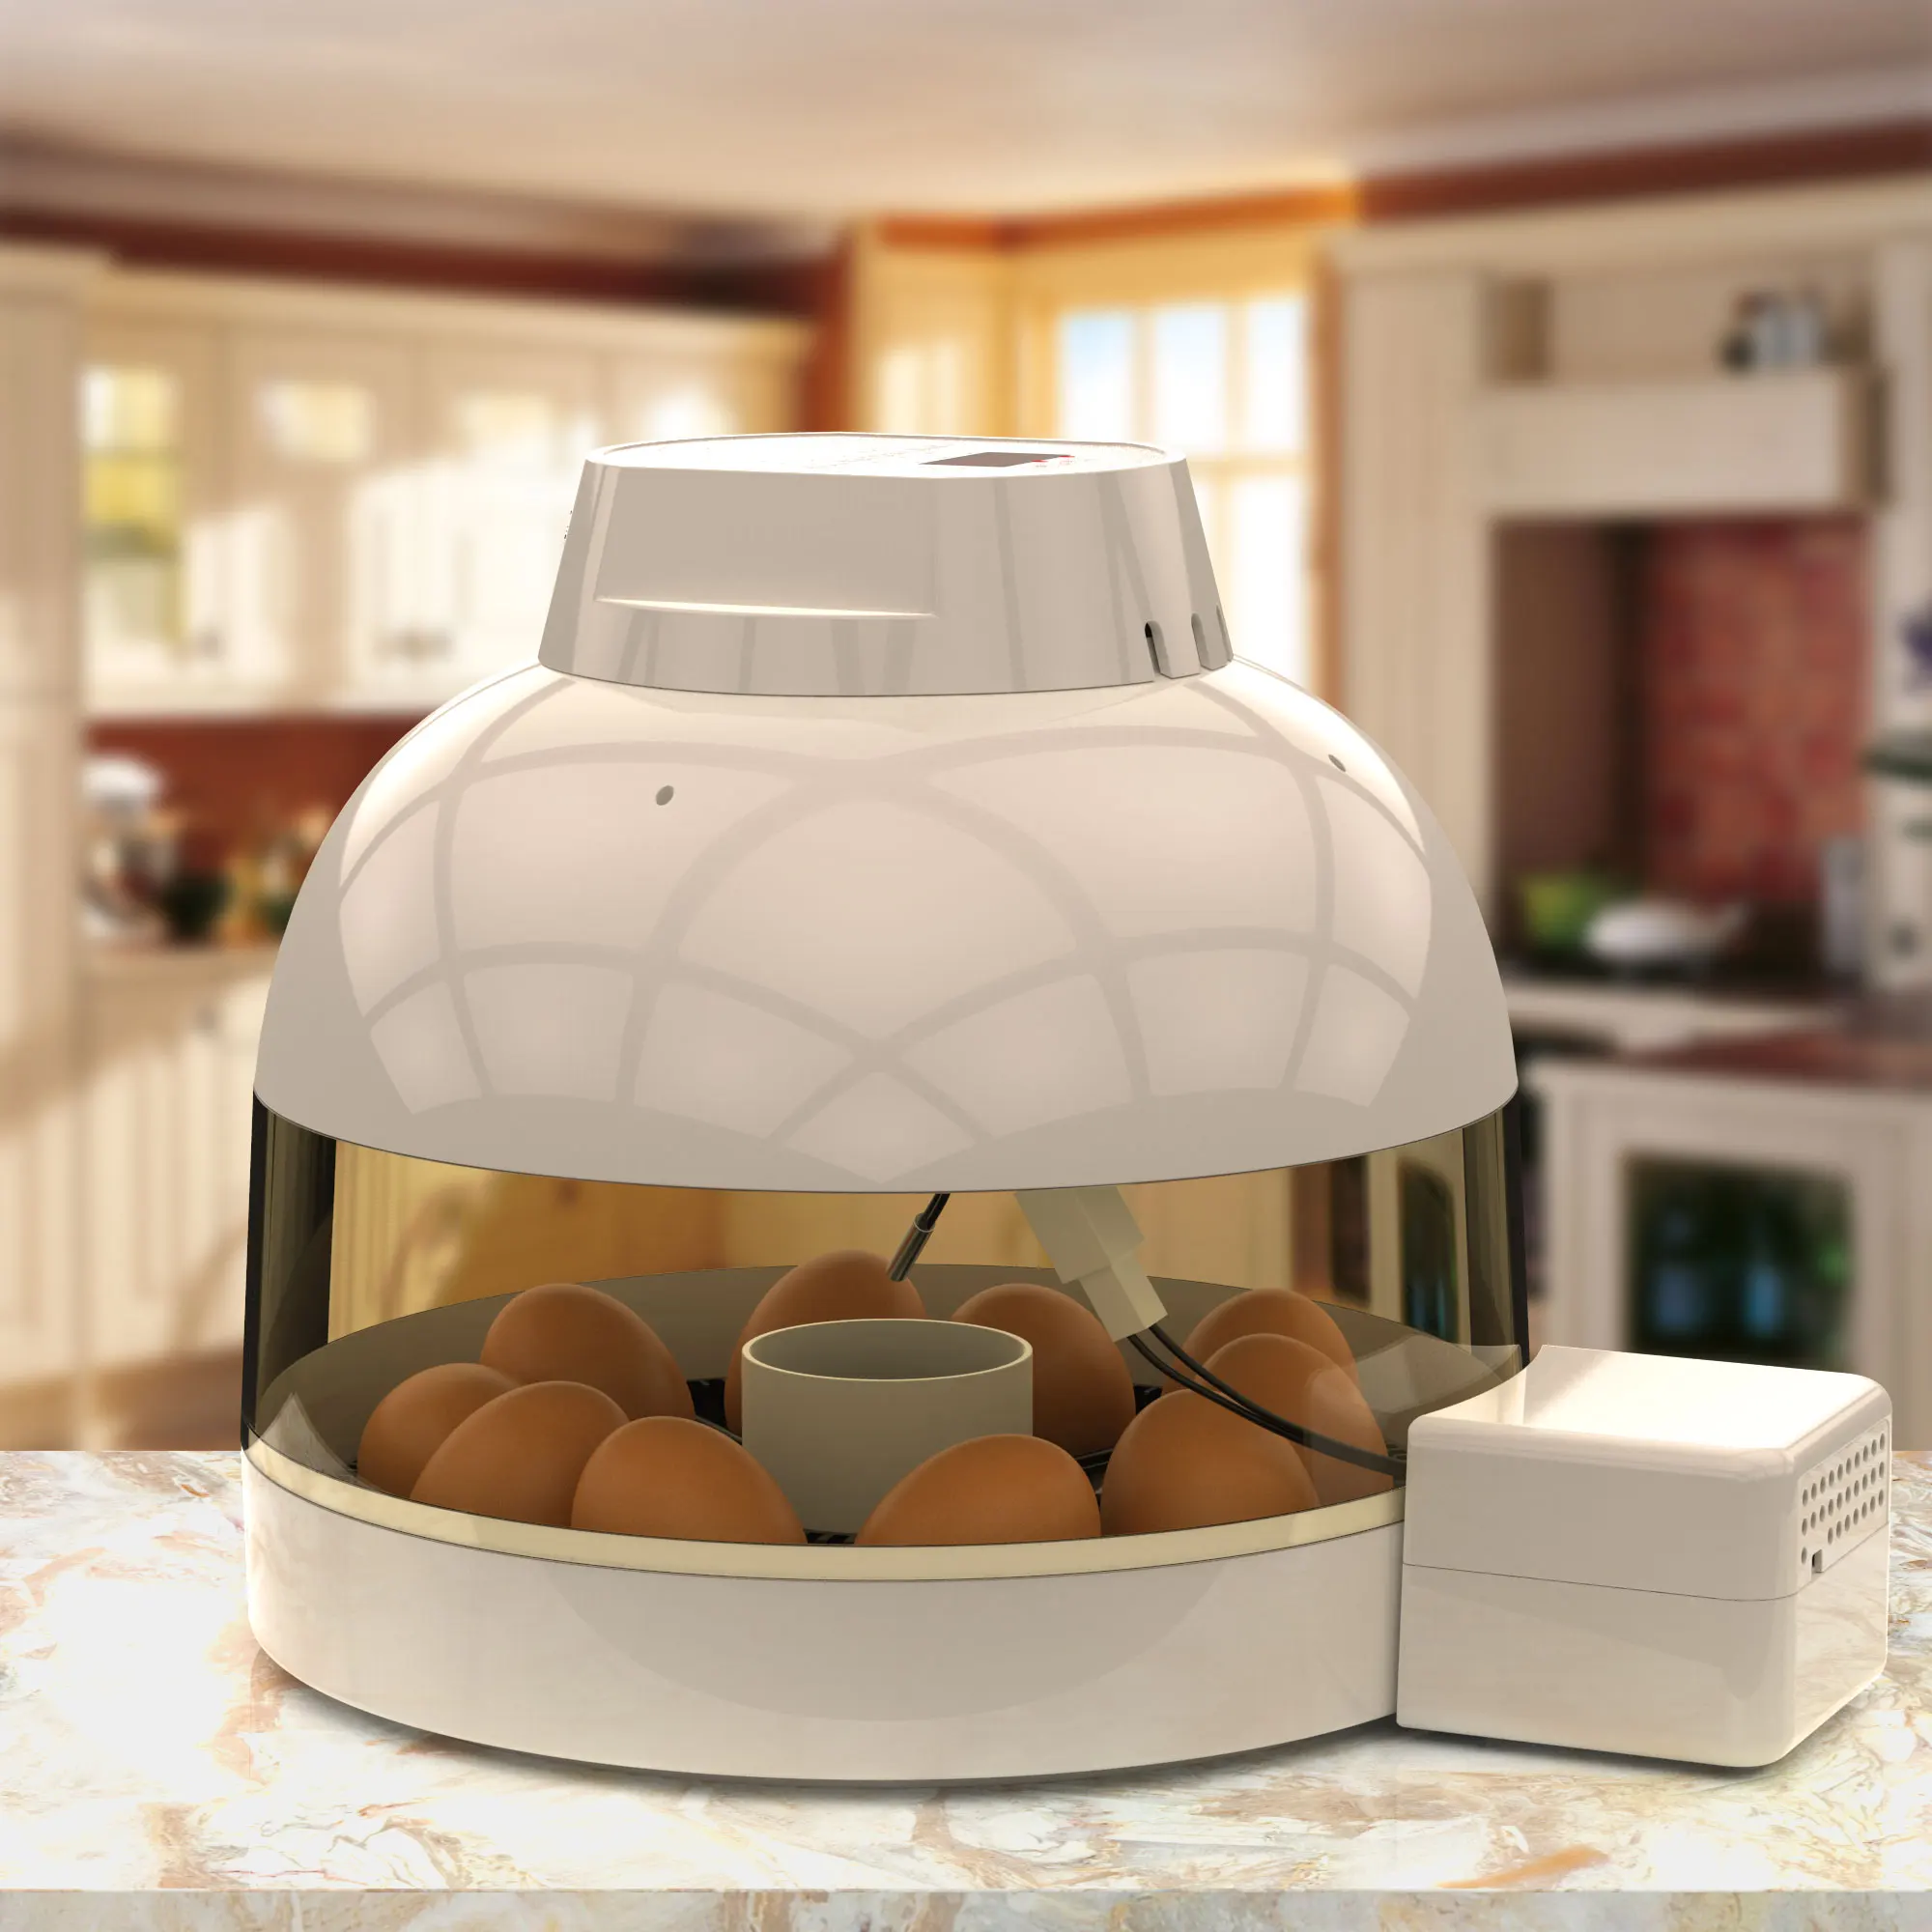 household egg incubator